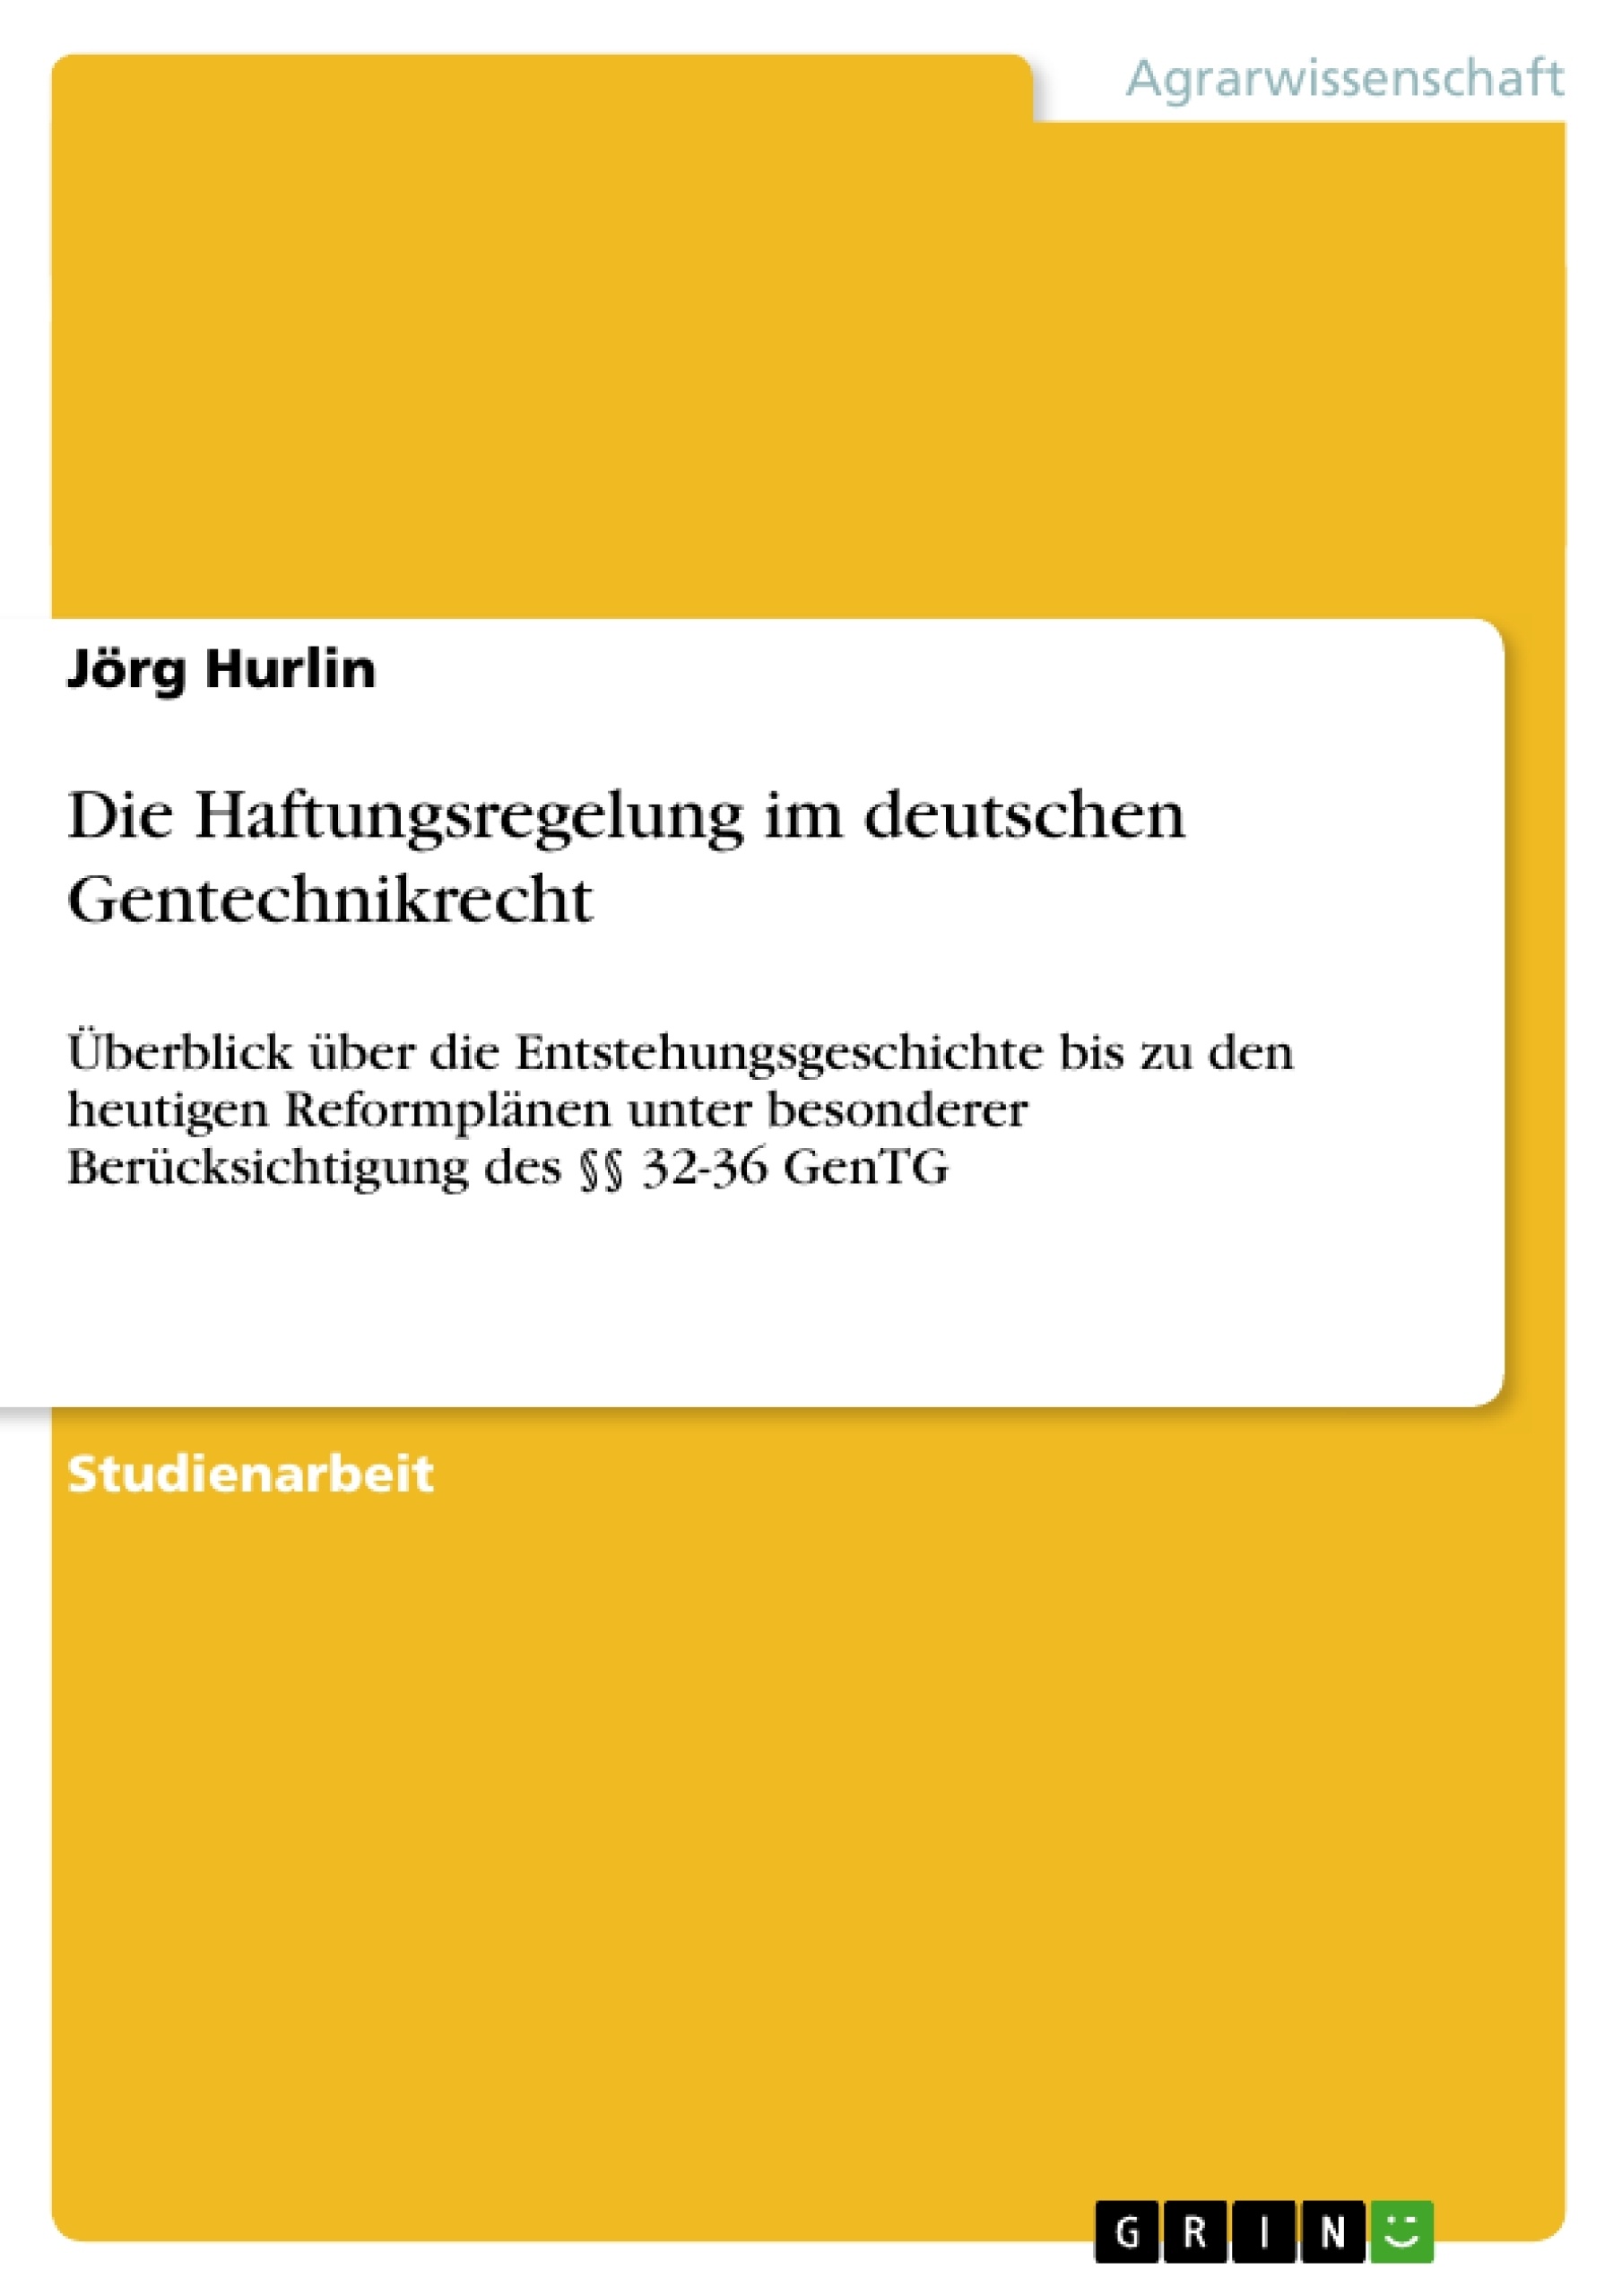 Titel: Die Haftungsregelung im deutschen Gentechnikrecht